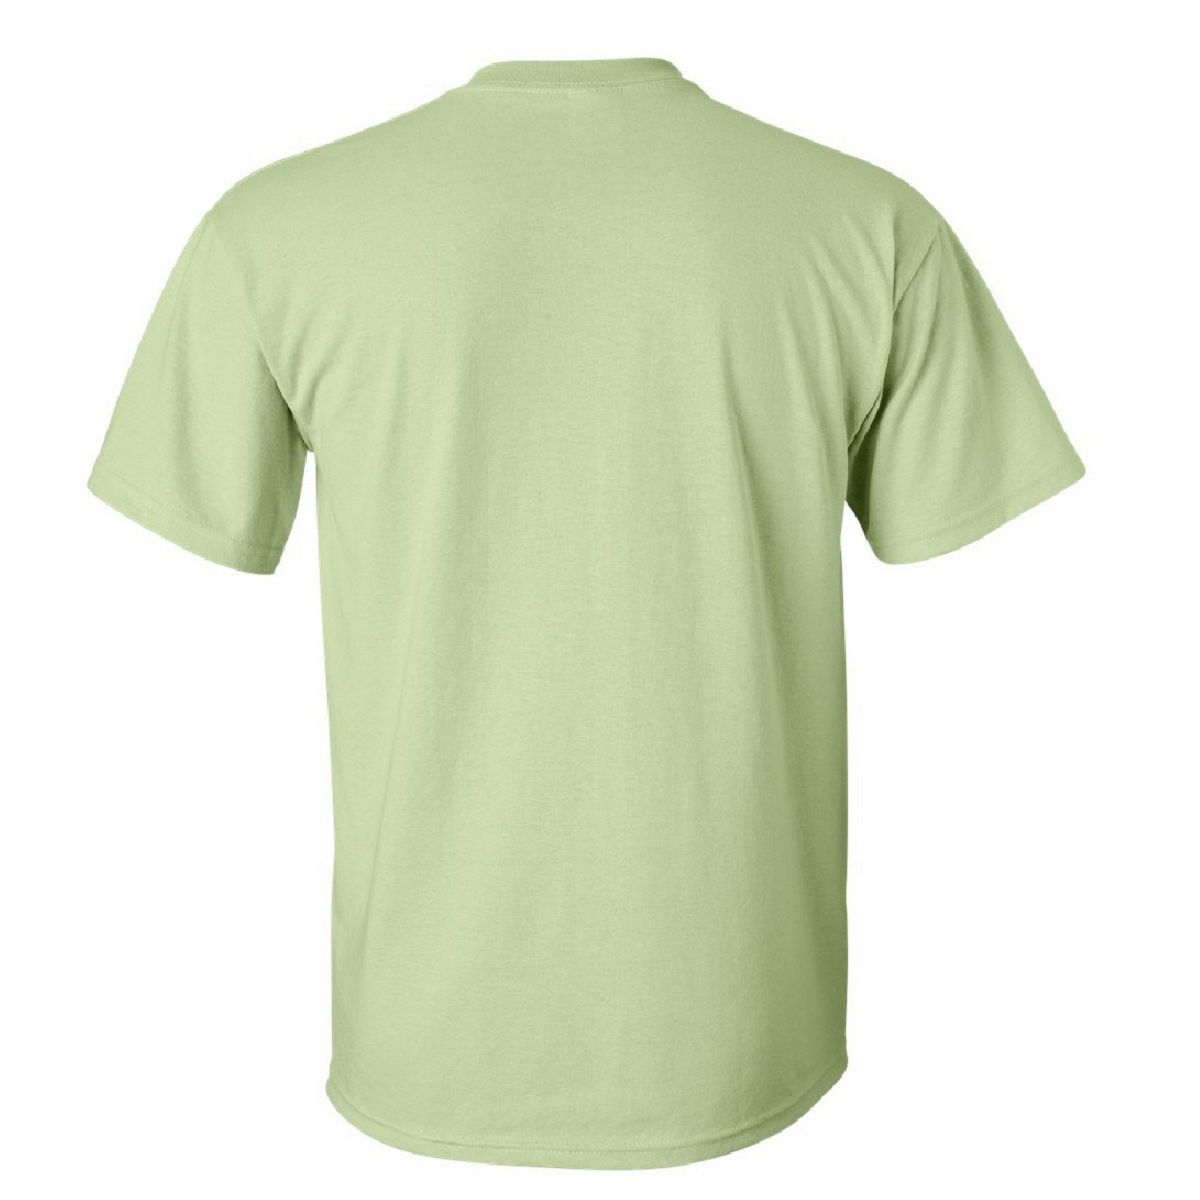 Мужская футболка из ультрахлопка с коротким рукавом Floso iggy azalea